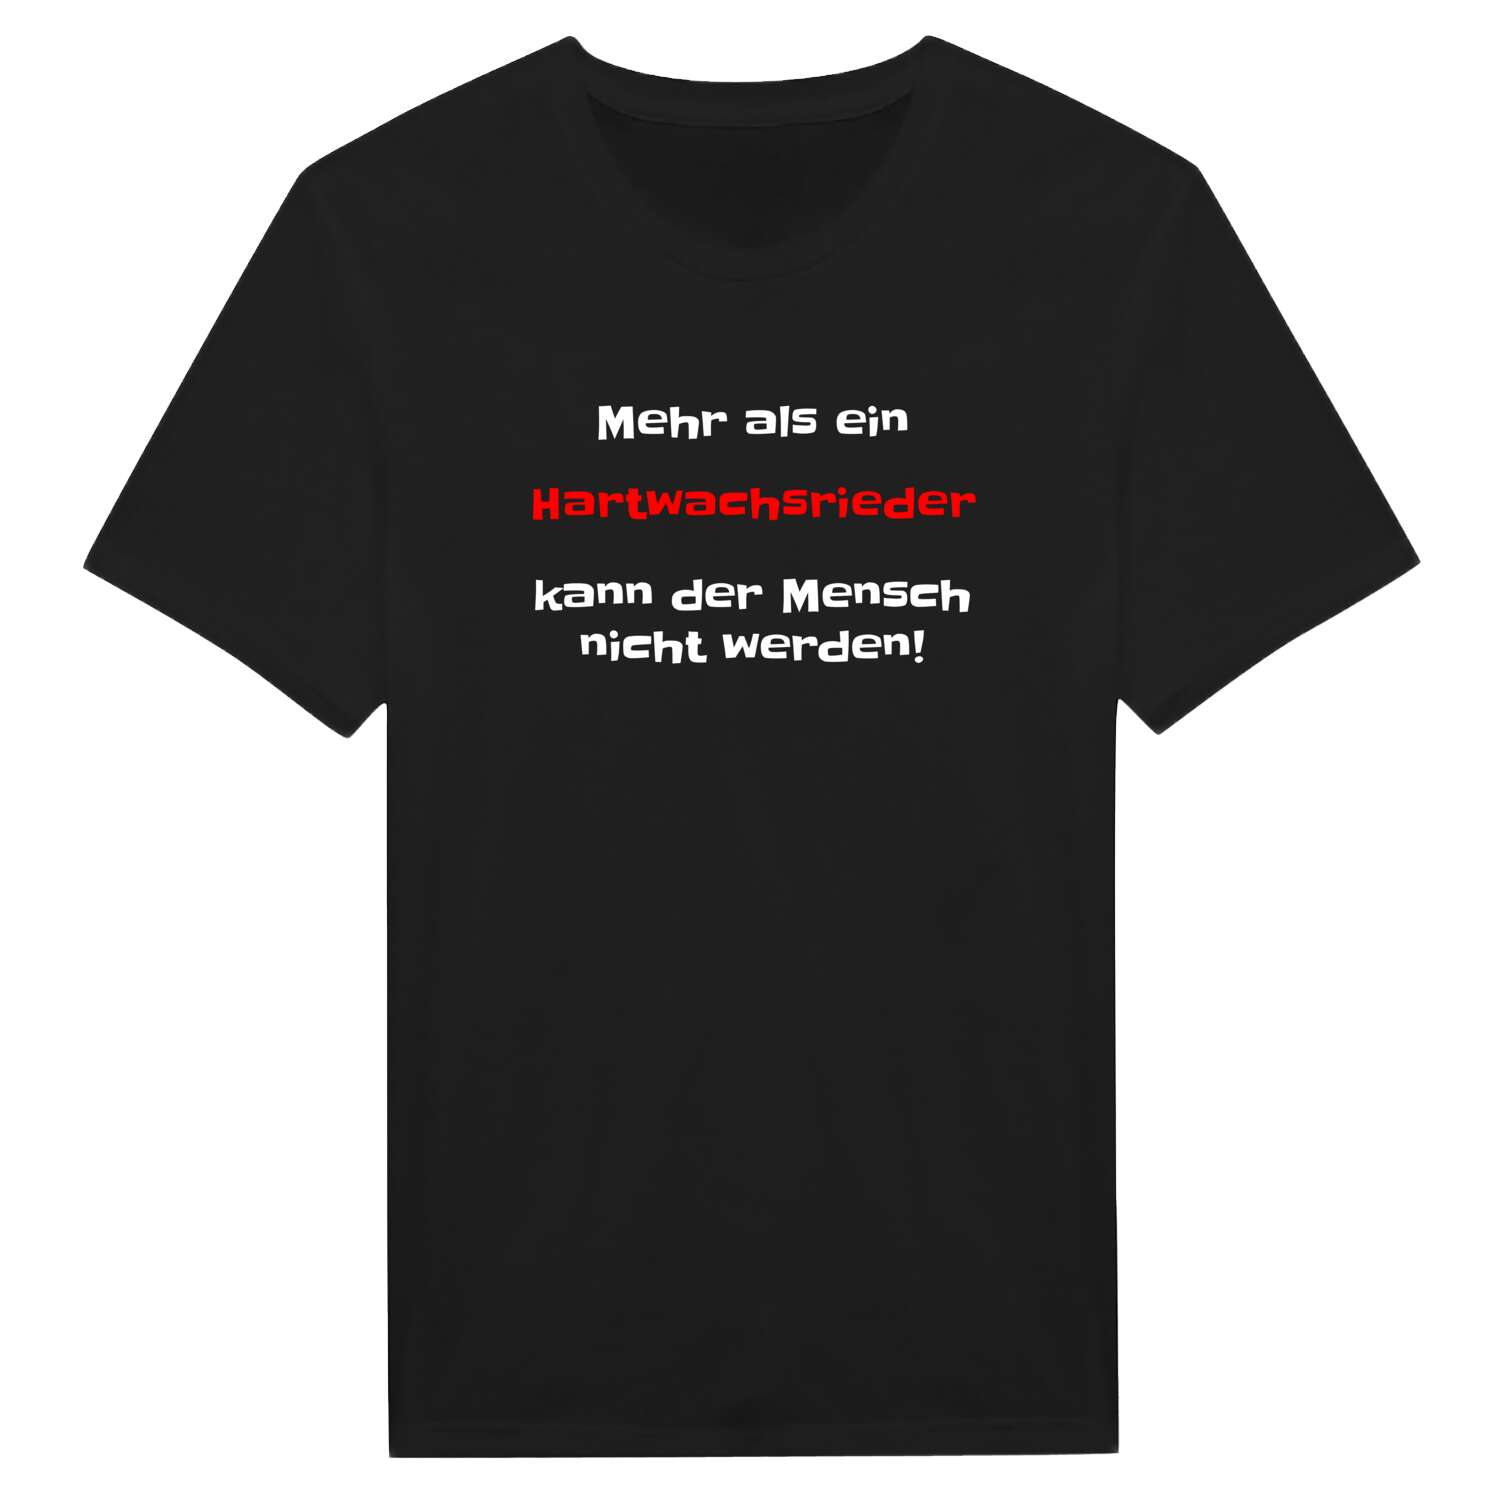 Hartwachsried T-Shirt »Mehr als ein«